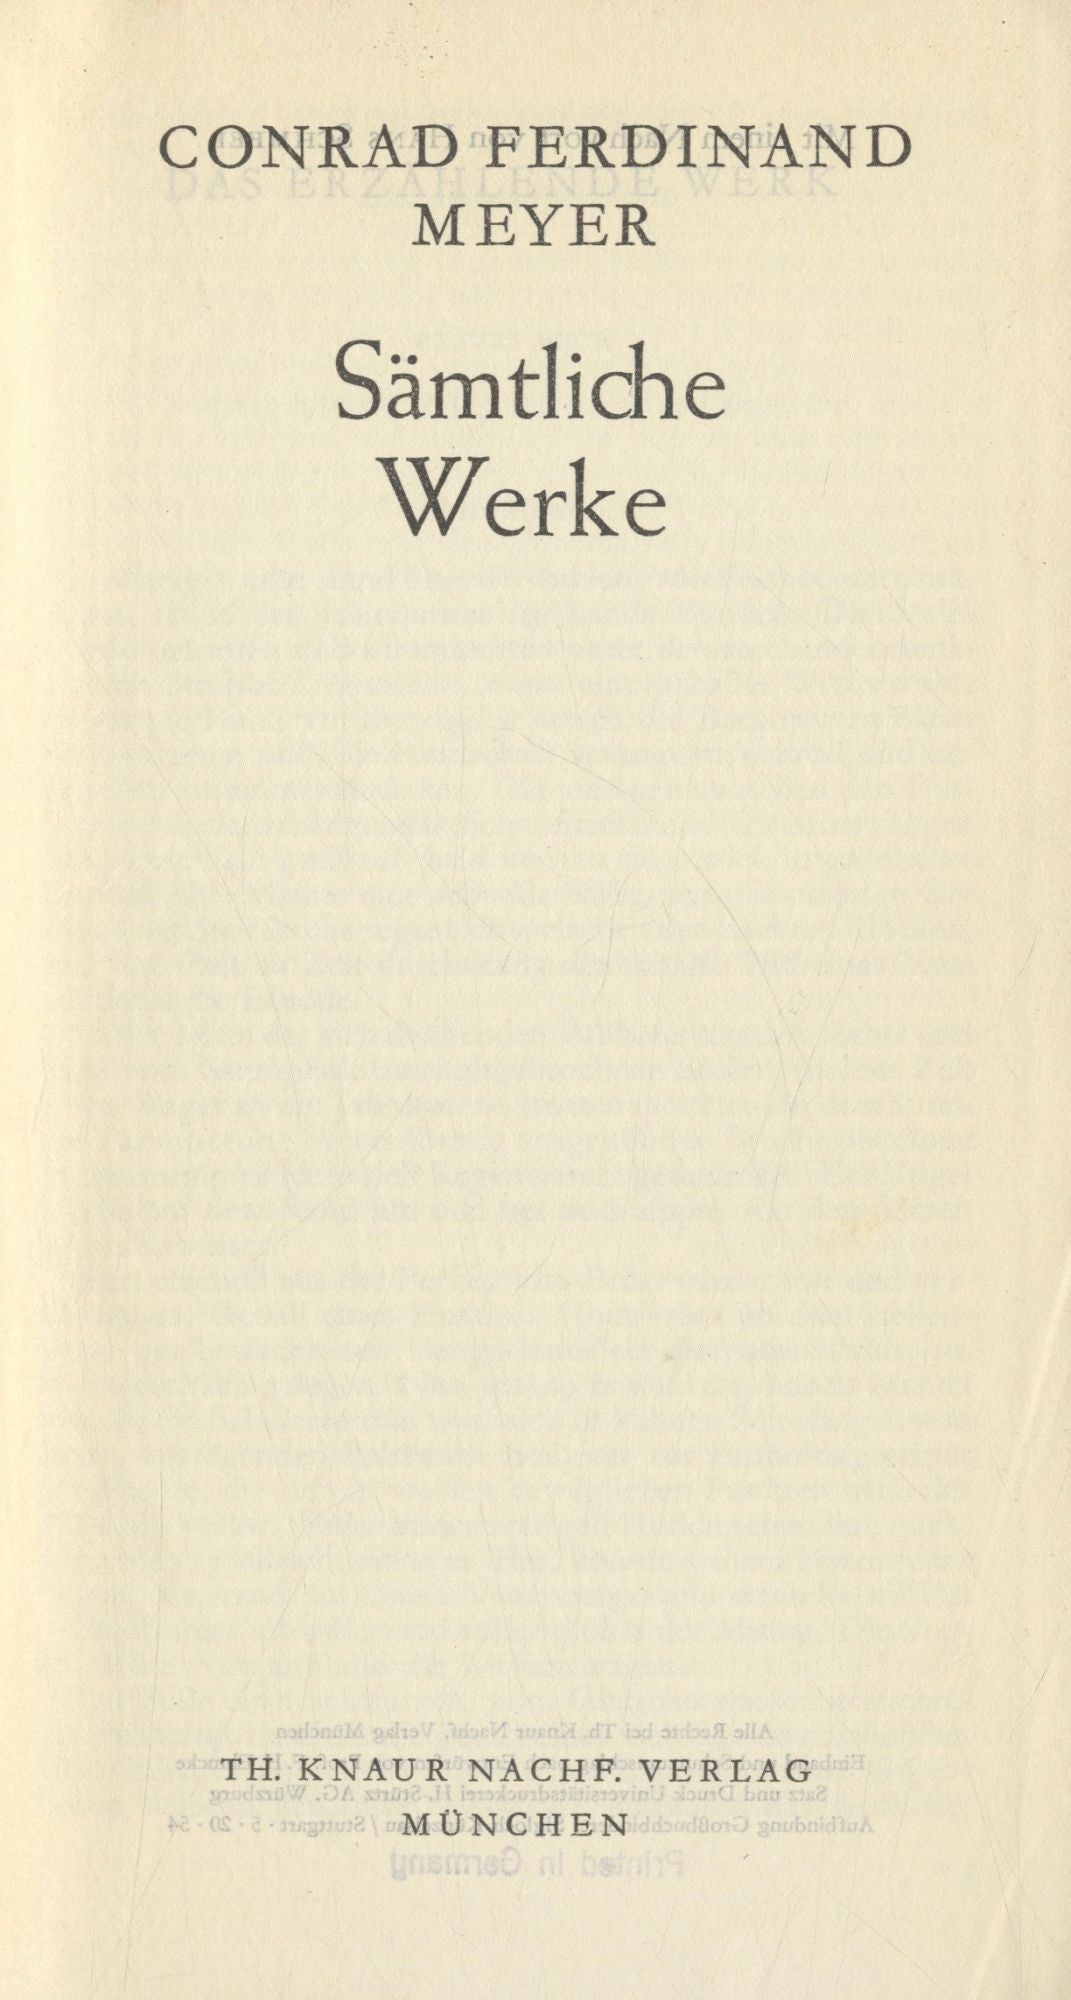 Book #27386 Sämtliche Werke. Conrad Ferdinand Meyer.